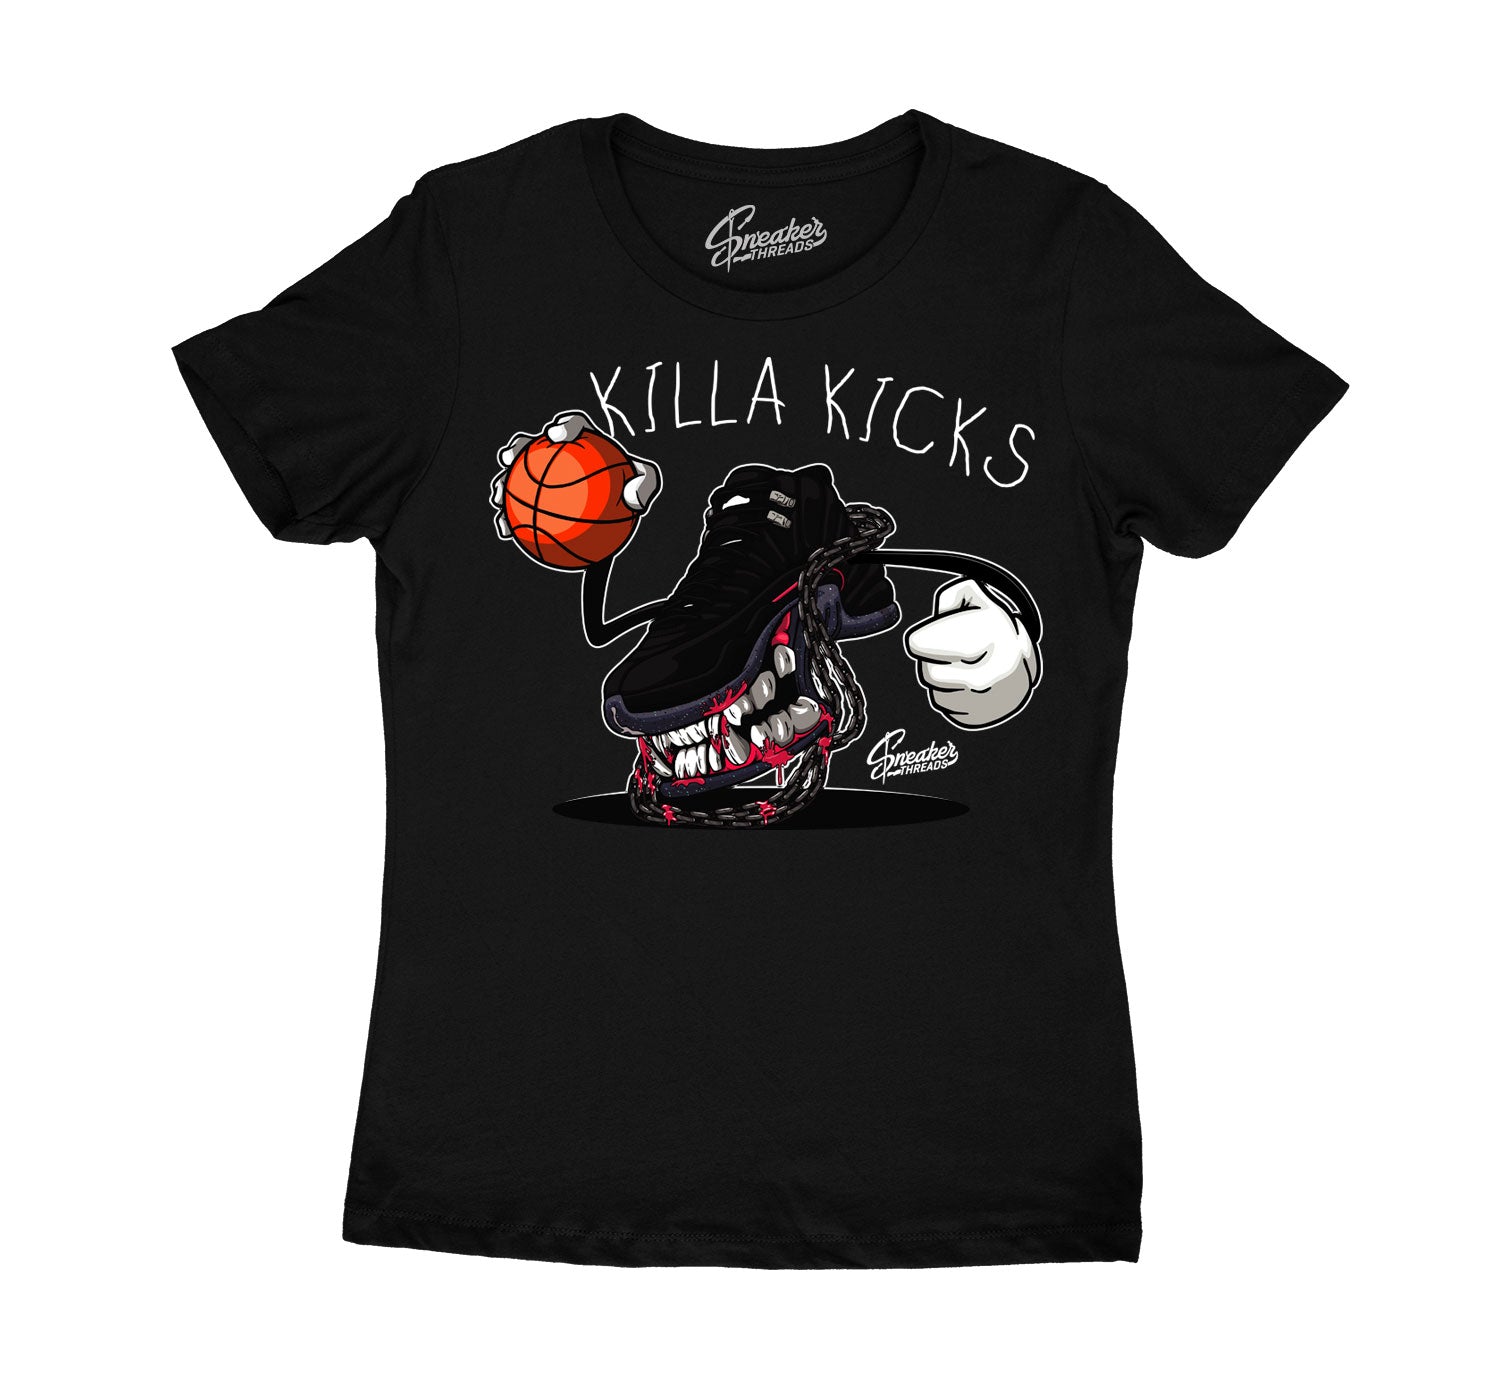 Womens Utility 12 Shirt - Killa Kicks - Black